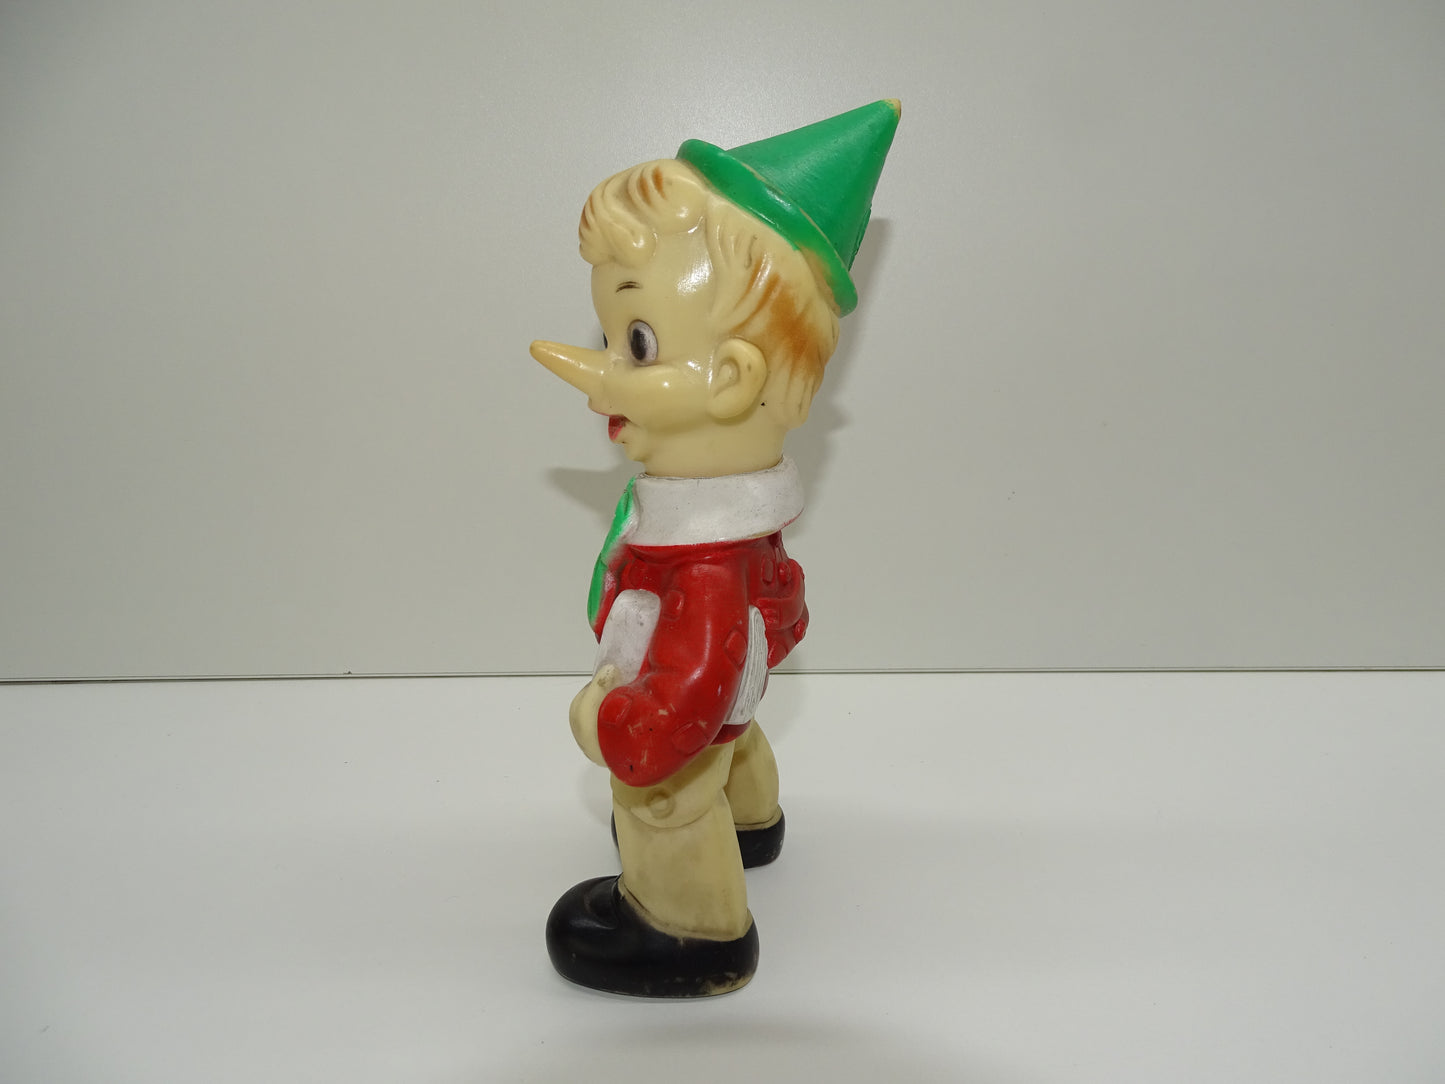 Retro Pop: Pinokkio, Ledra Toy, jaren '60